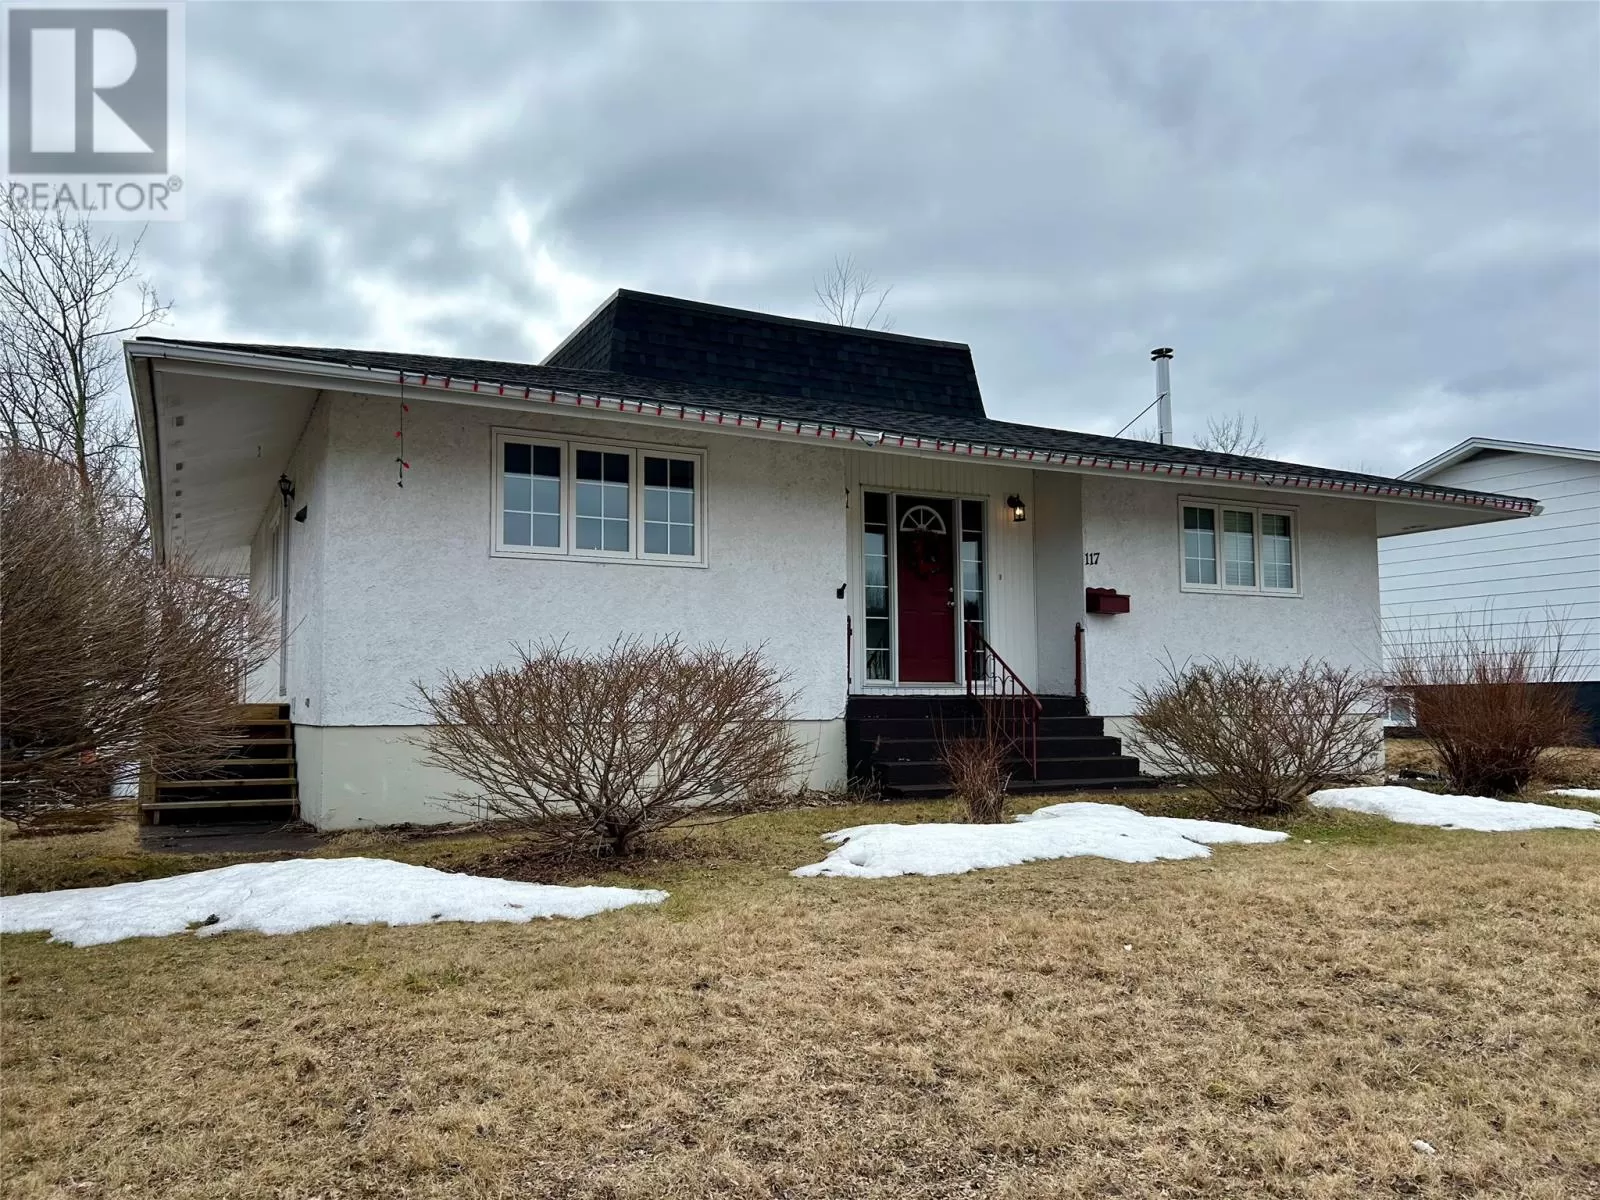 House for rent: 117 Goodyear Avenue, Grand Falls-Windsor, Newfoundland & Labrador A2A 1J5